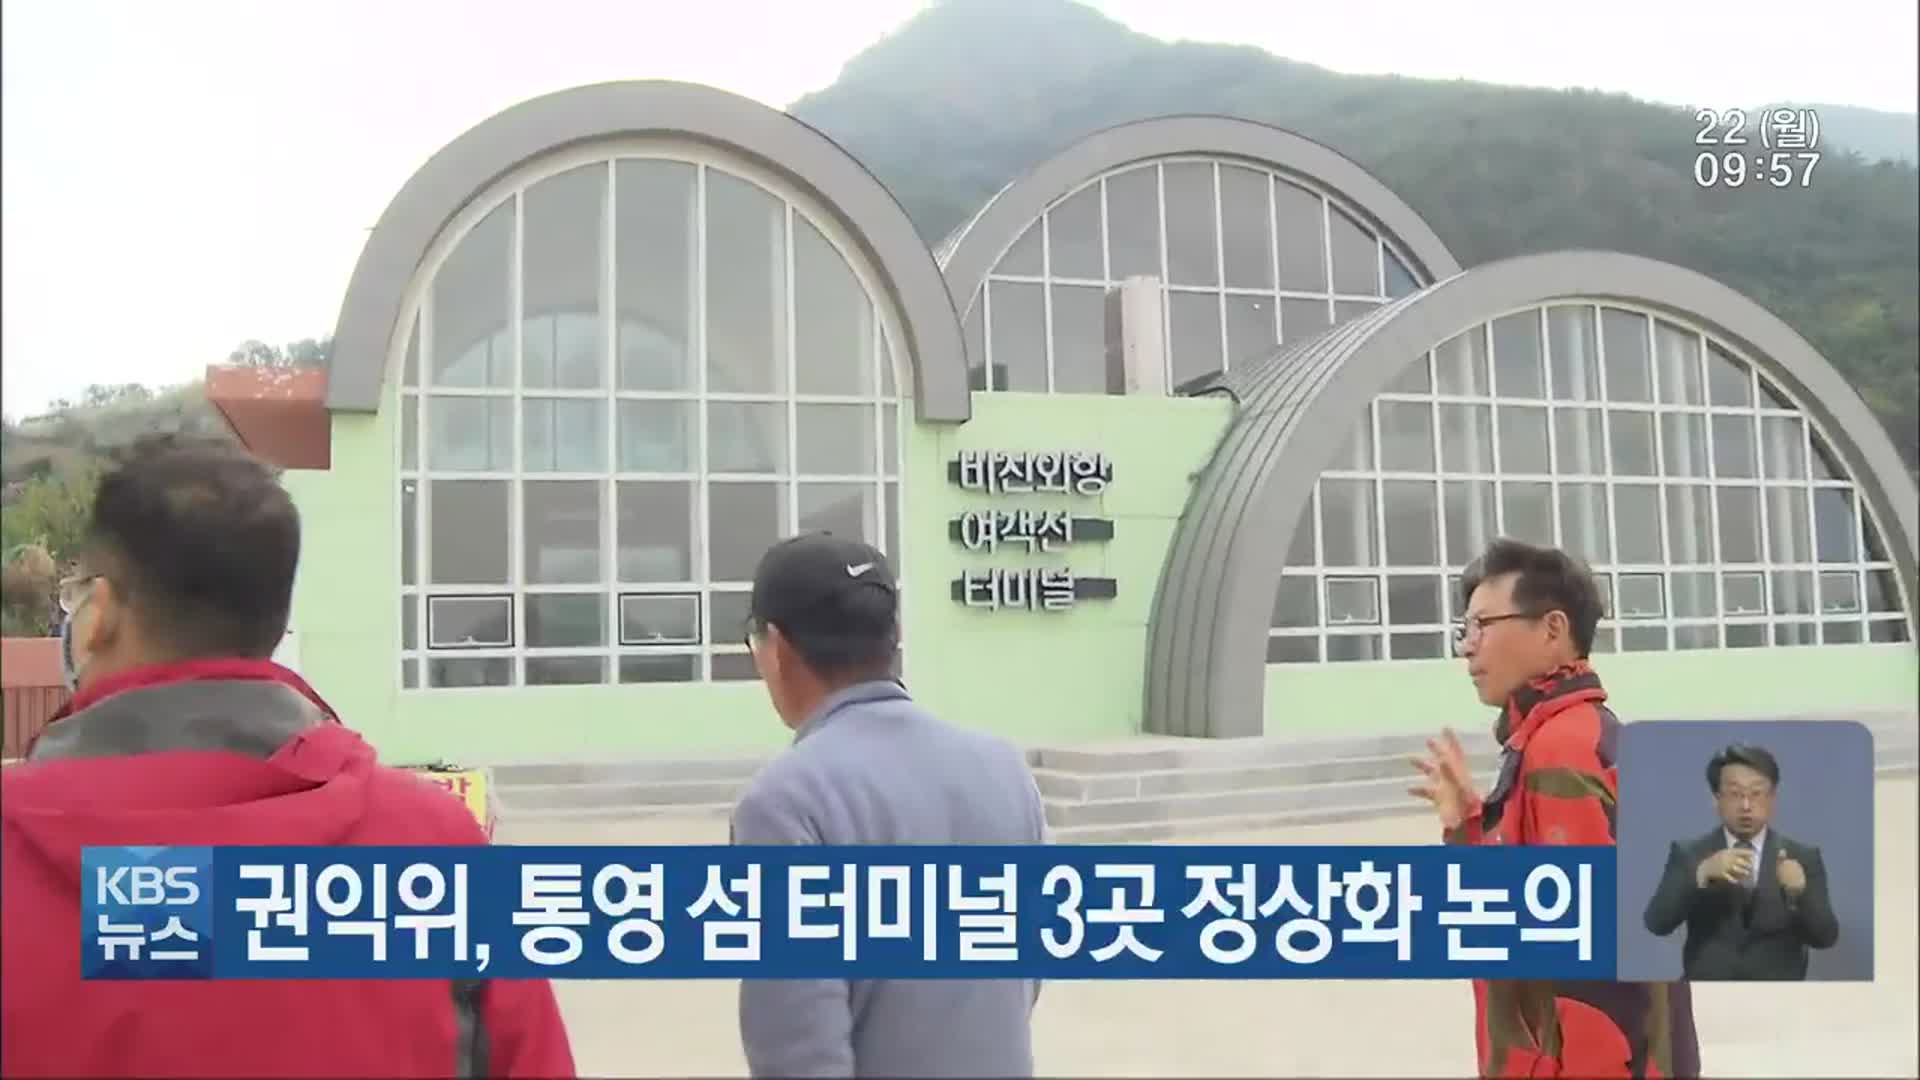 권익위, 통영 섬 터미널 3곳 정상화 논의